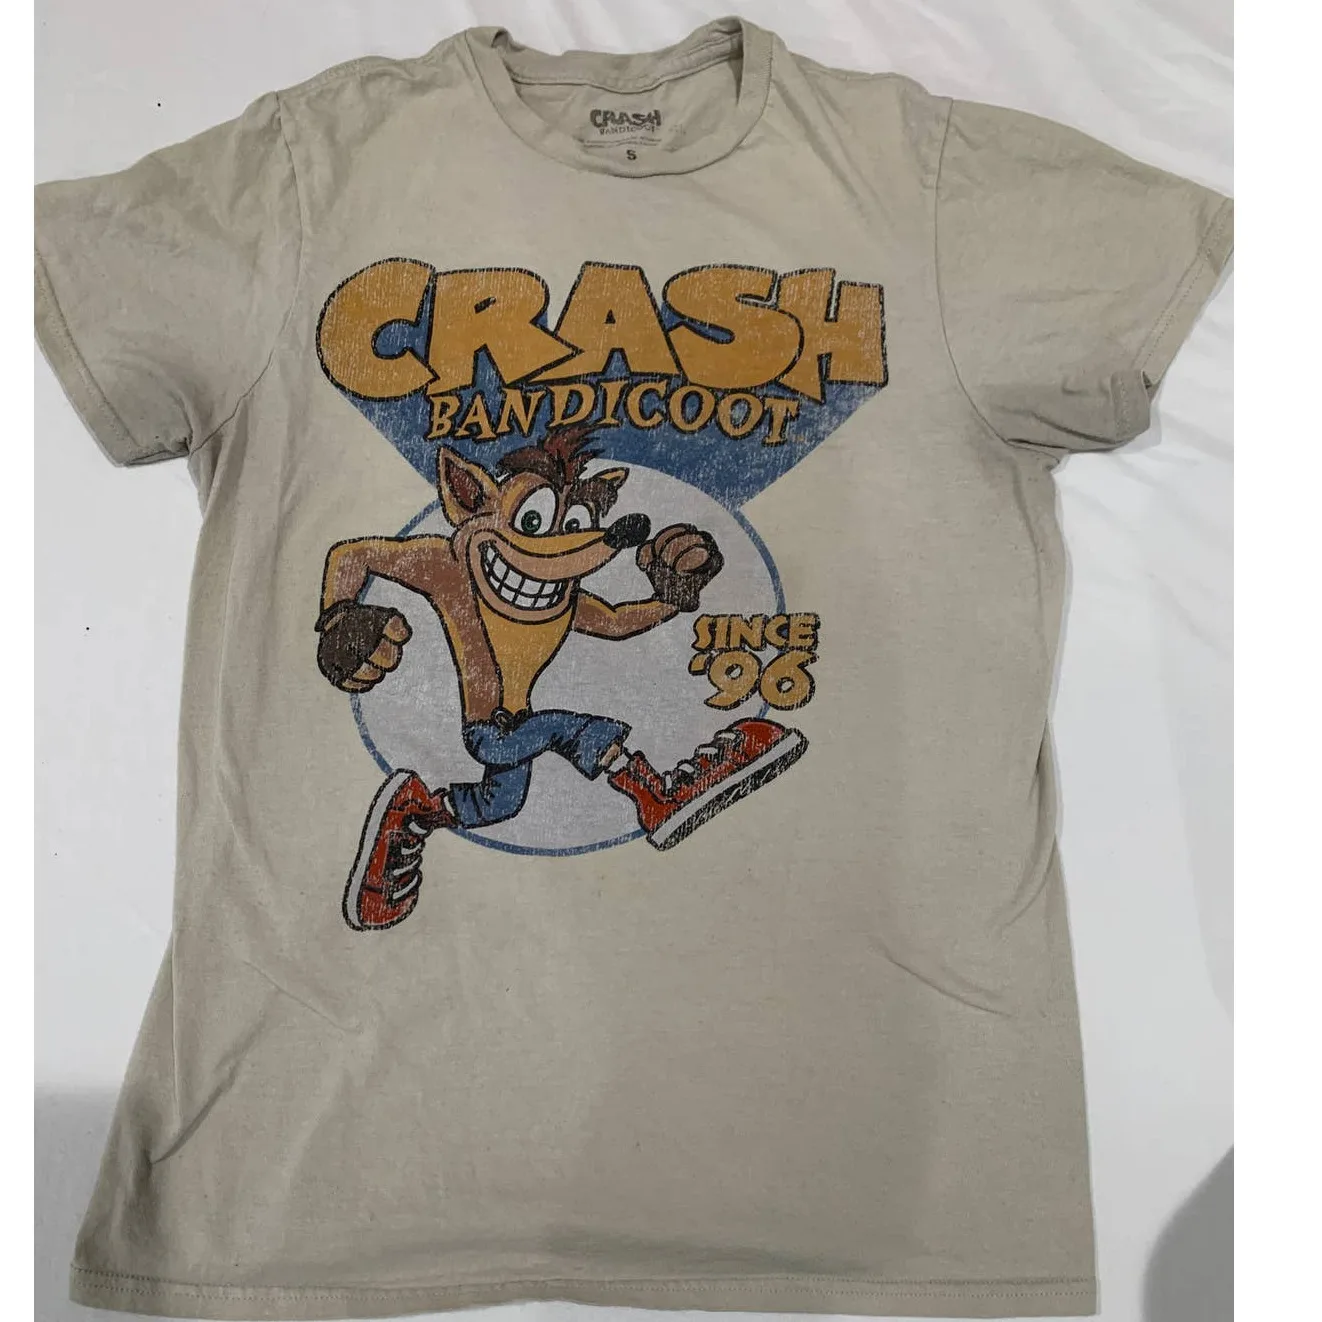 Белая футболка Crash Bandicoot с 96 года, размер S